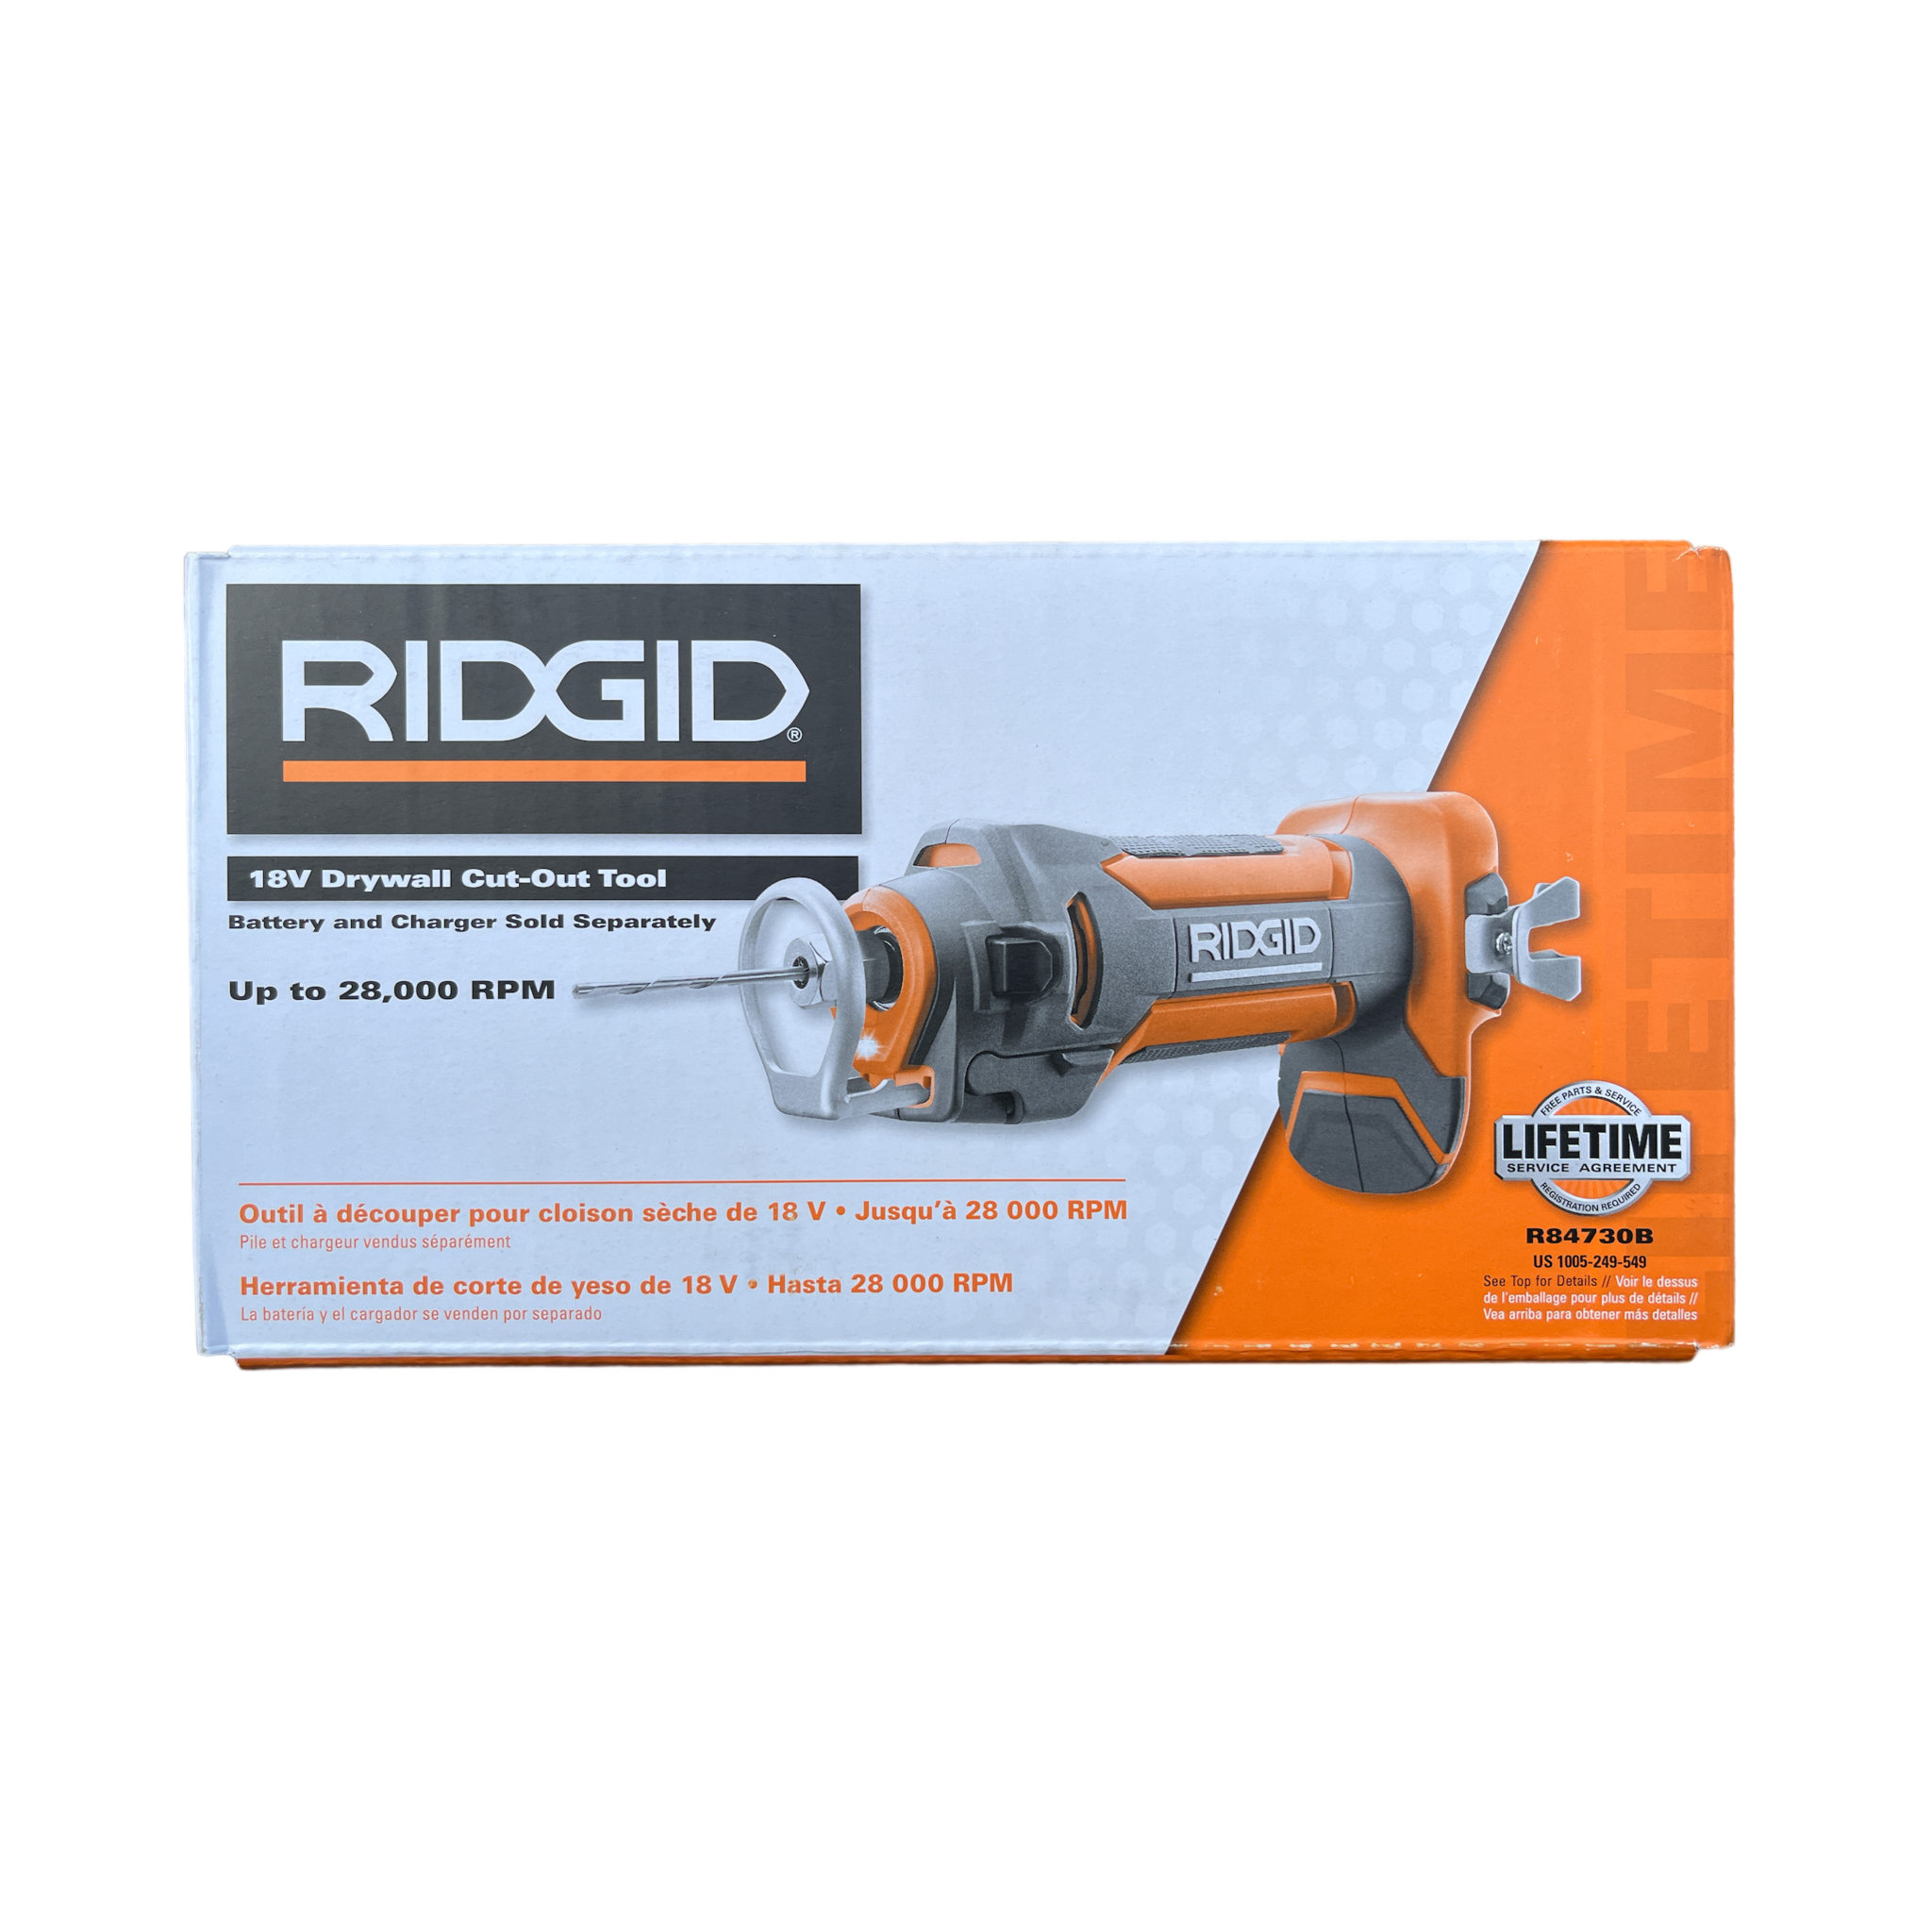 Ridgid R84730B 18V Drywall Cut-Out Tool